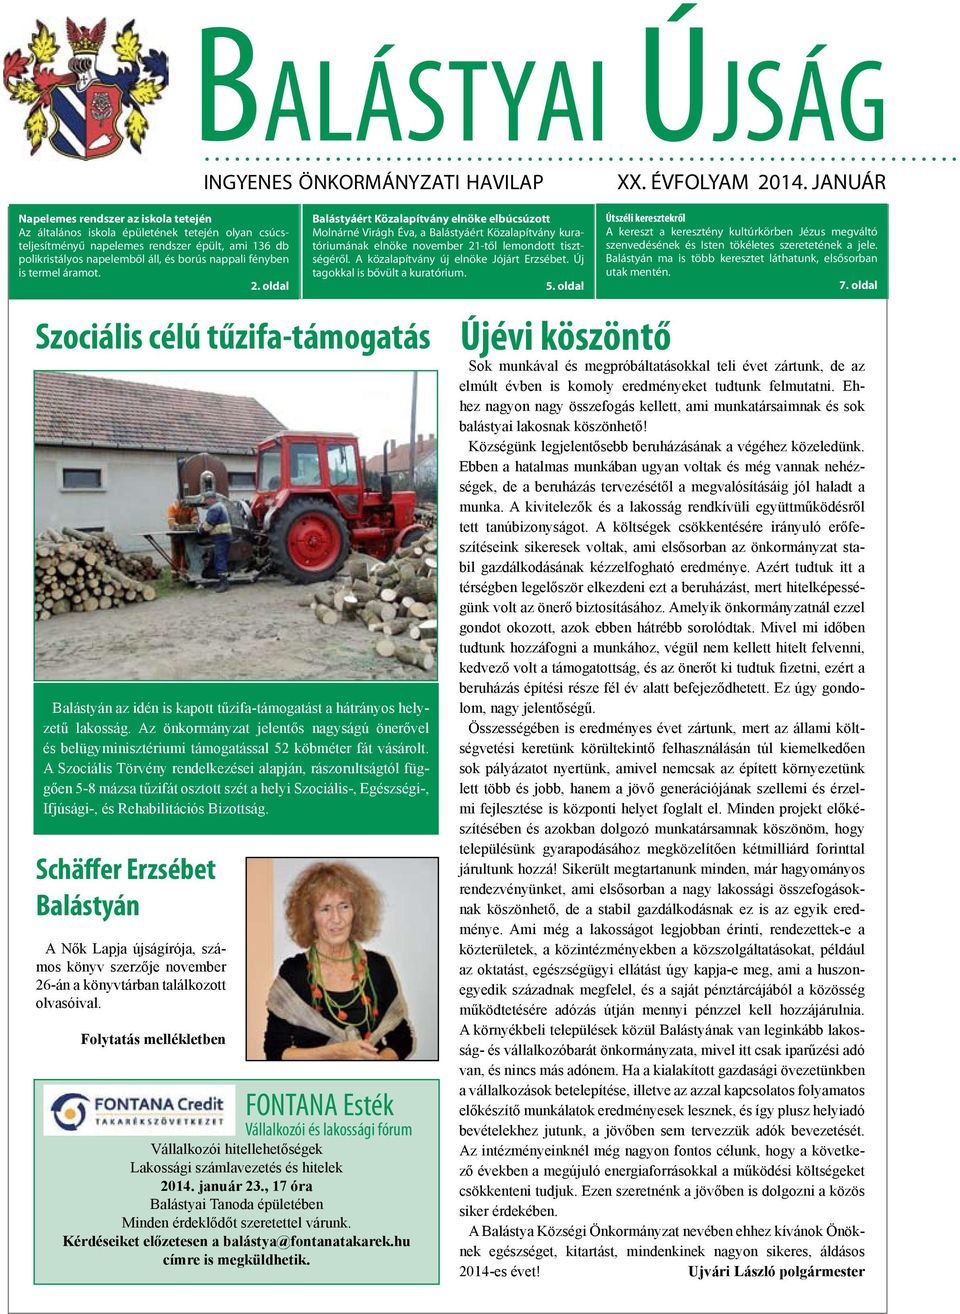 fényben is termel áramot. 2. oldal Szociális célú tűzifa-támogatás Balástyán az idén is kapott tűzifa-támogatást a hátrányos helyzetű lakosság.